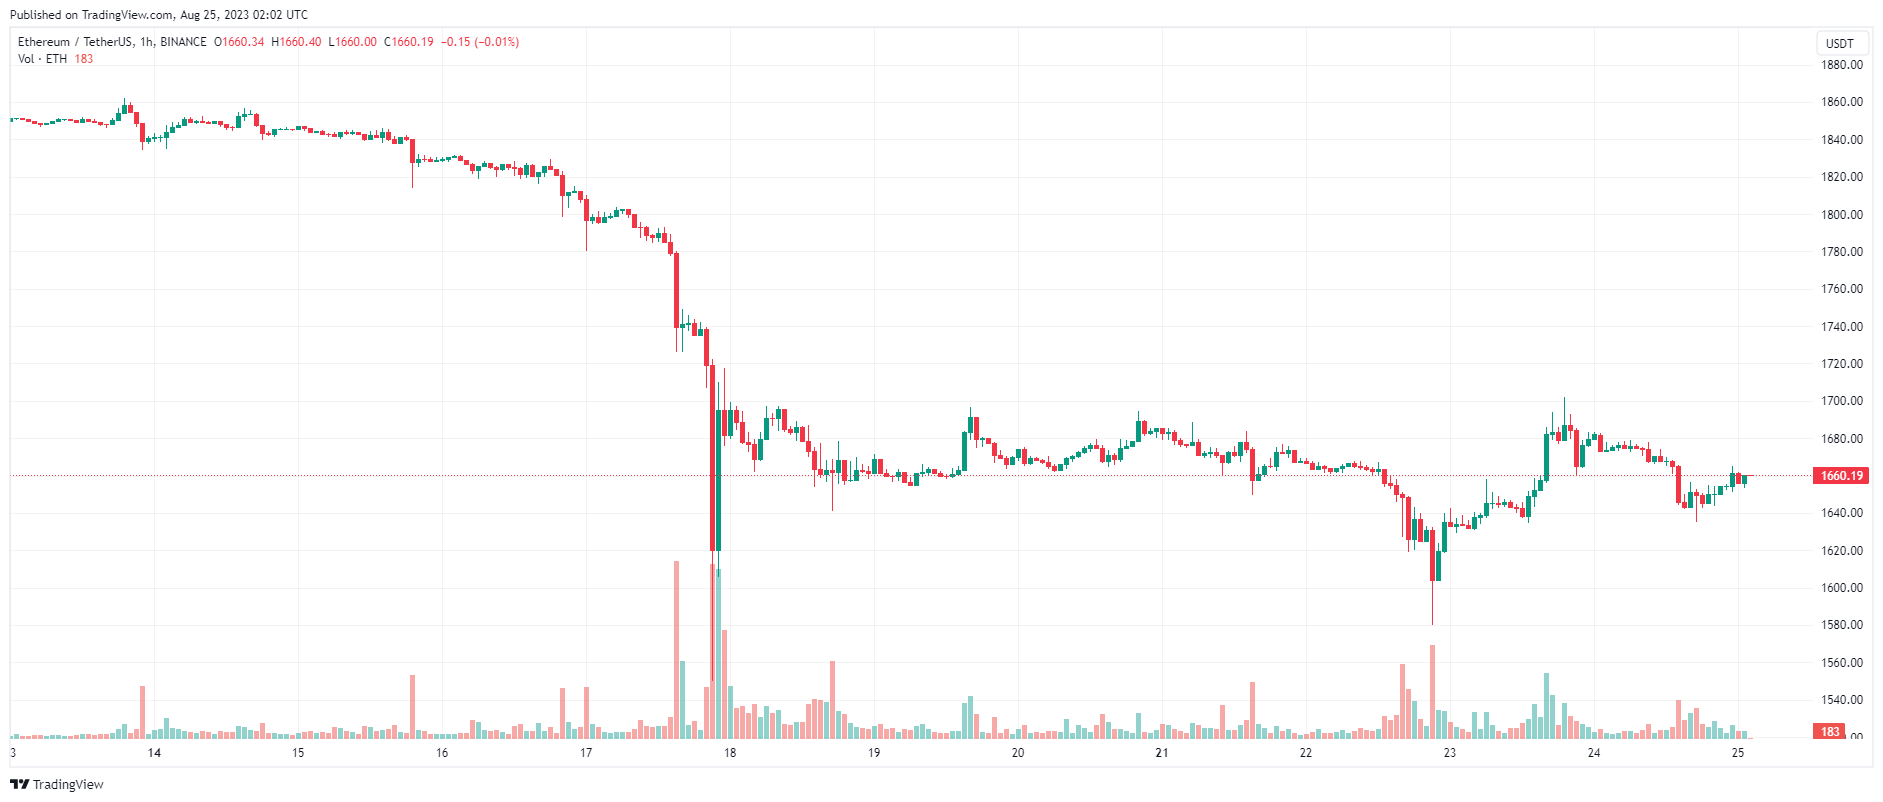 Giá Coin hôm nay 25/08: Bitcoin quay trở lại sát $ 26.000, altcoin và Phố Wall đỏ lửa trong lúc chờ đợi bài phát biểu từ chủ tịch Fed